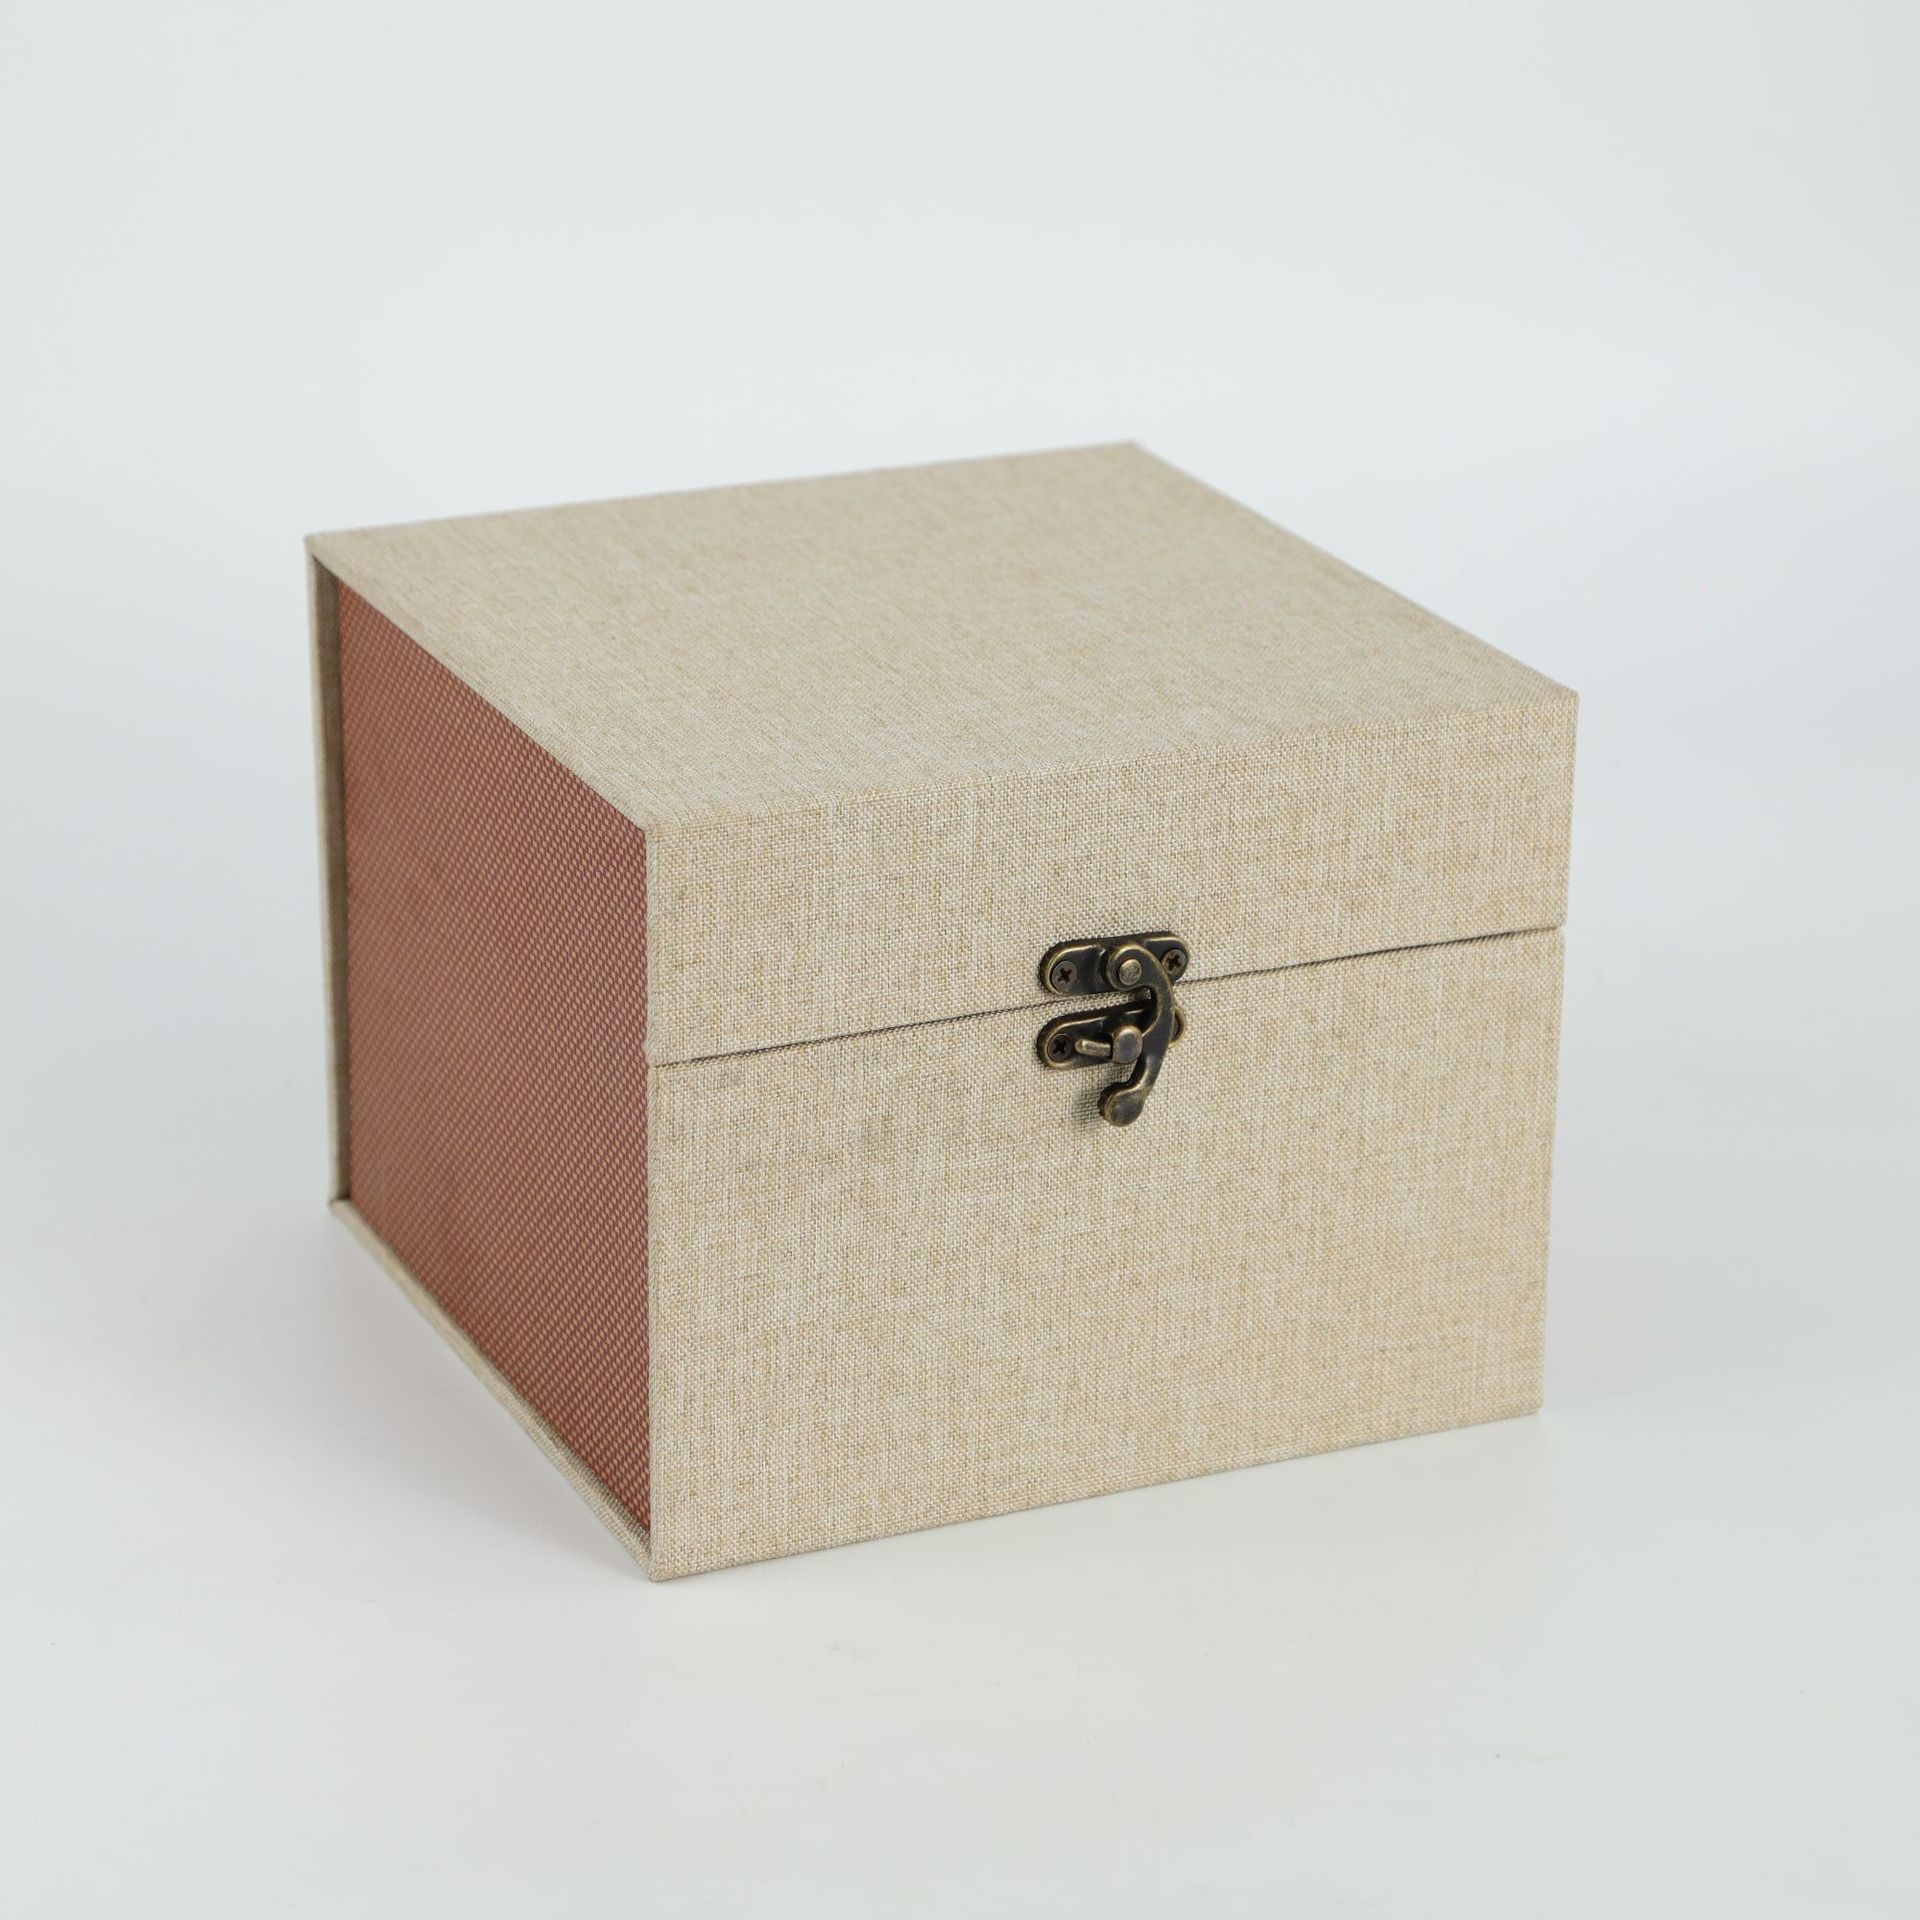 麻布铜扣锦盒 紫砂壶瓷器包装盒 建盏印章礼品盒香炉包装盒批发